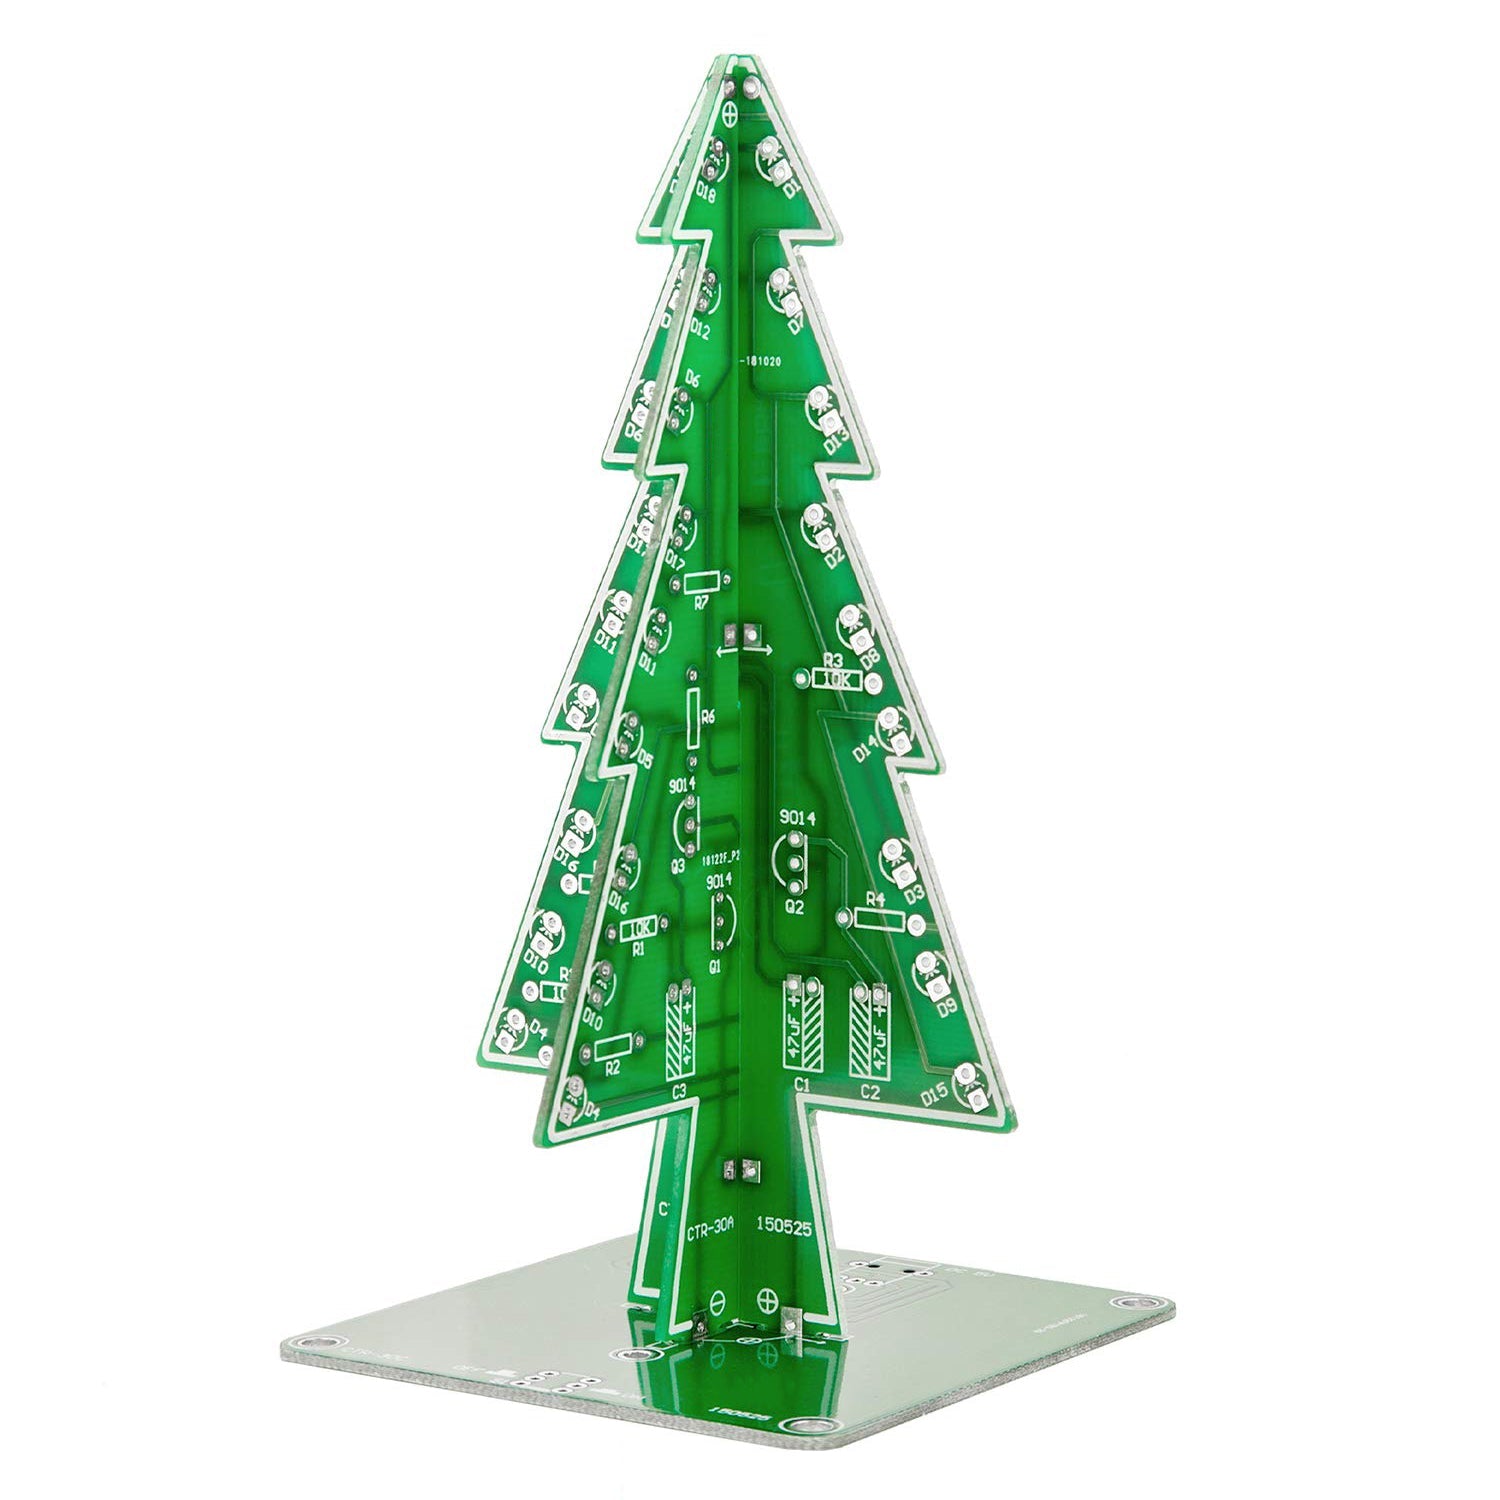 DIY LED Weihnachtsbaum Kit zum Löten mit bunt blinkenden Lichtern - AZ-Delivery